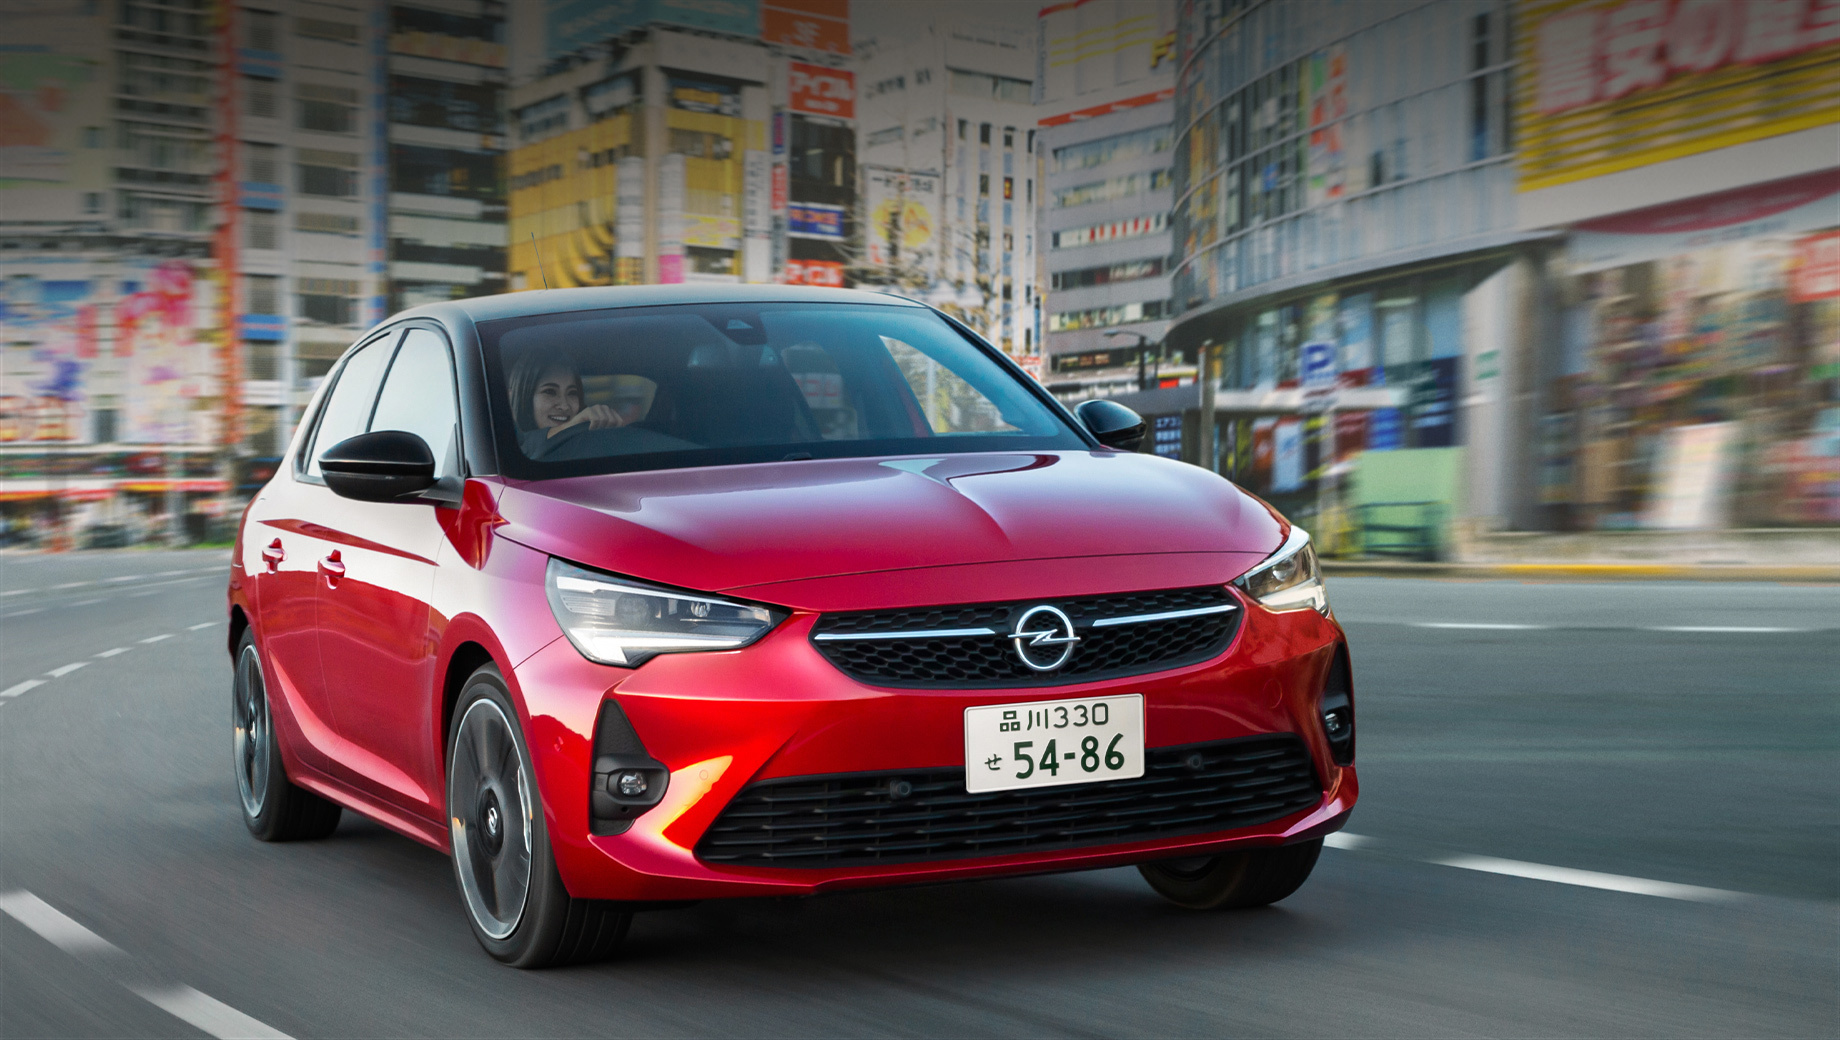 Opel corsa,Opel grandland x,Opel combo. Корсе японцы дадут другое название (вероятно, Vita), остальные модели сохранят имена. В ближайшие месяцы Opel создаст дилерскую сеть в крупных городах с целью охватить 80% территории к 2023-му. Начинать с нуля Опелю не придётся: PSA представлена в Японии брендами Peugeot, Citroen и DS.